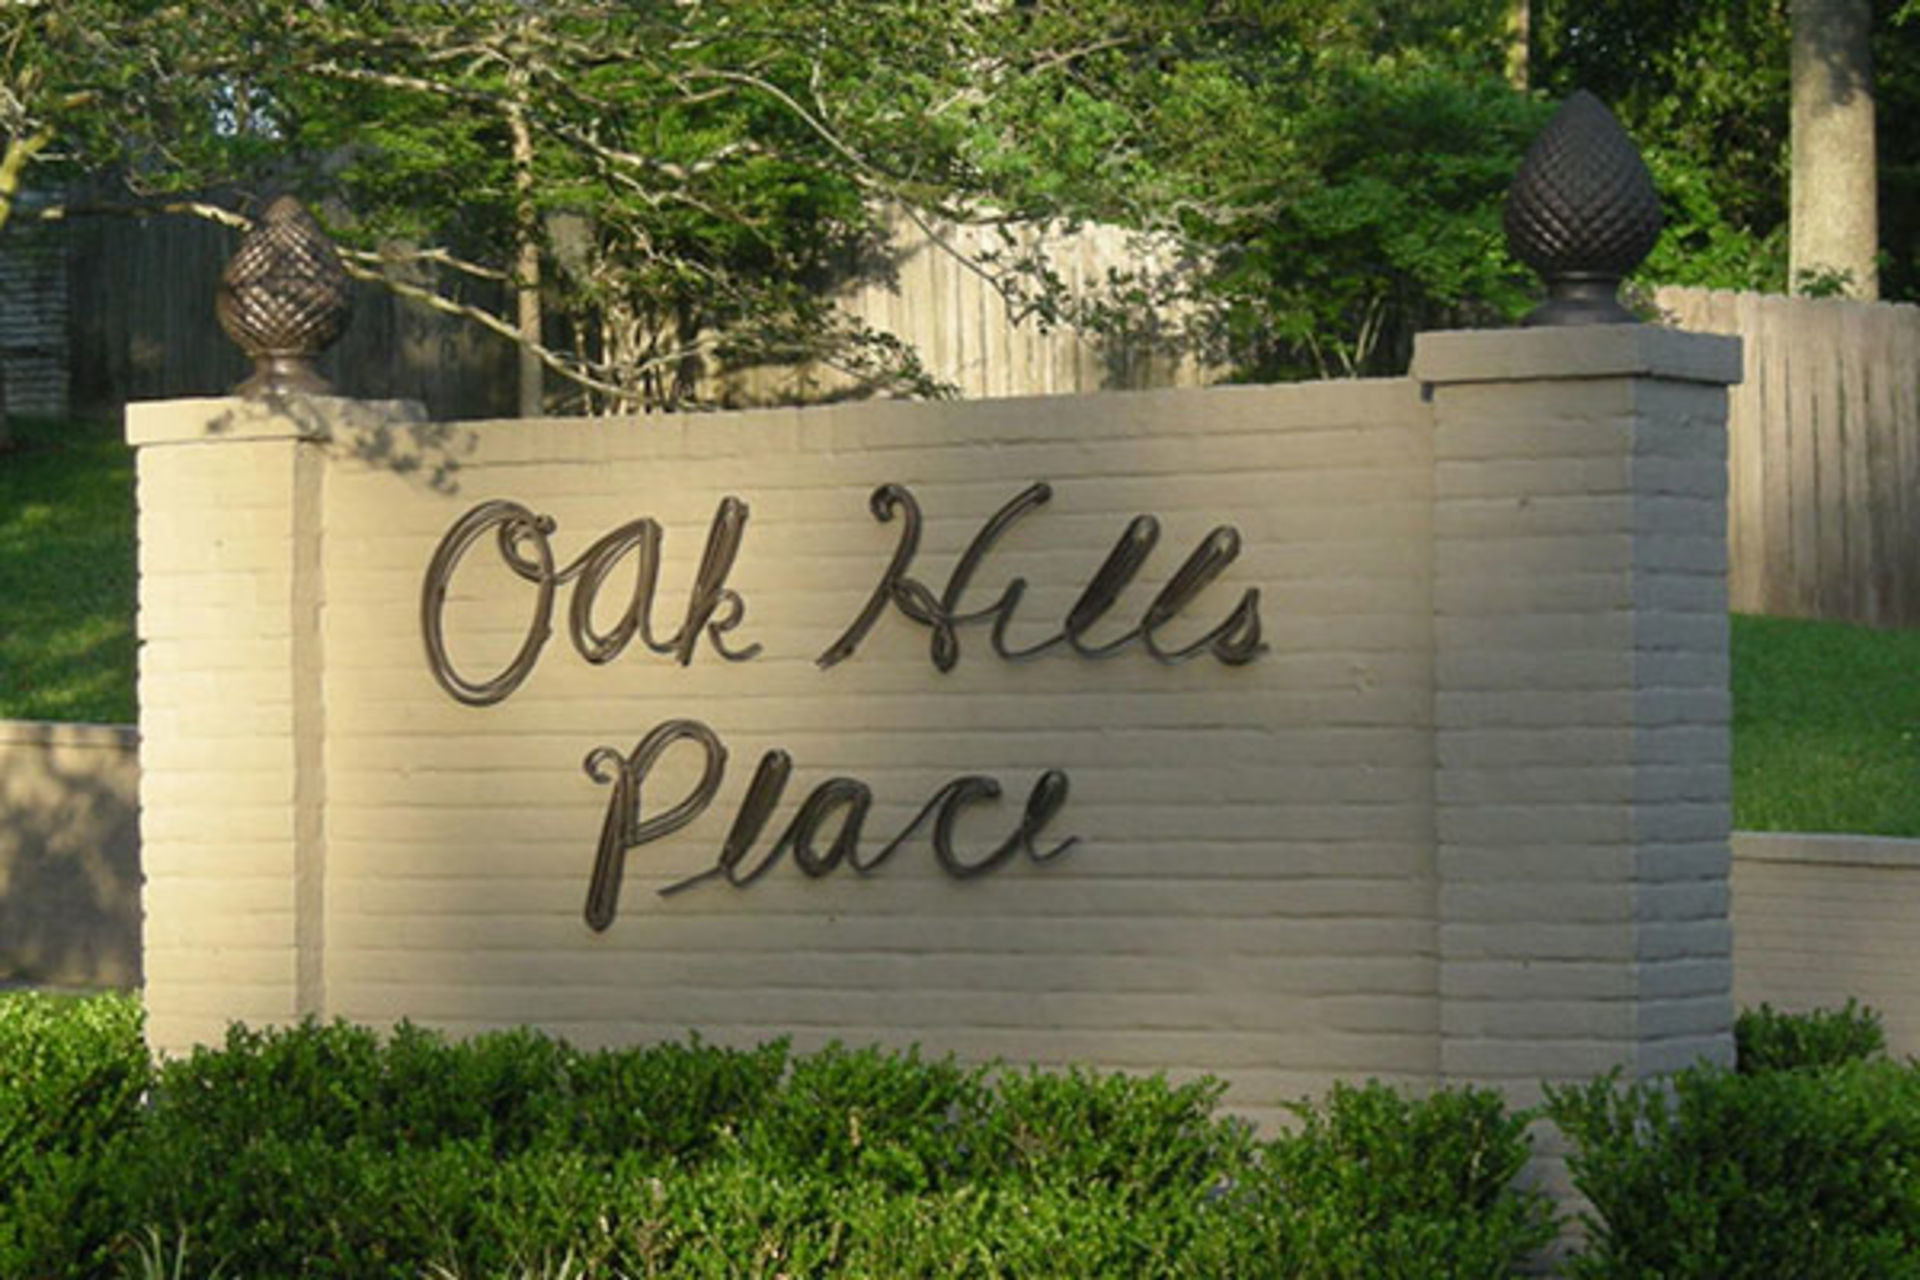 Oak Hills Place Subdivision